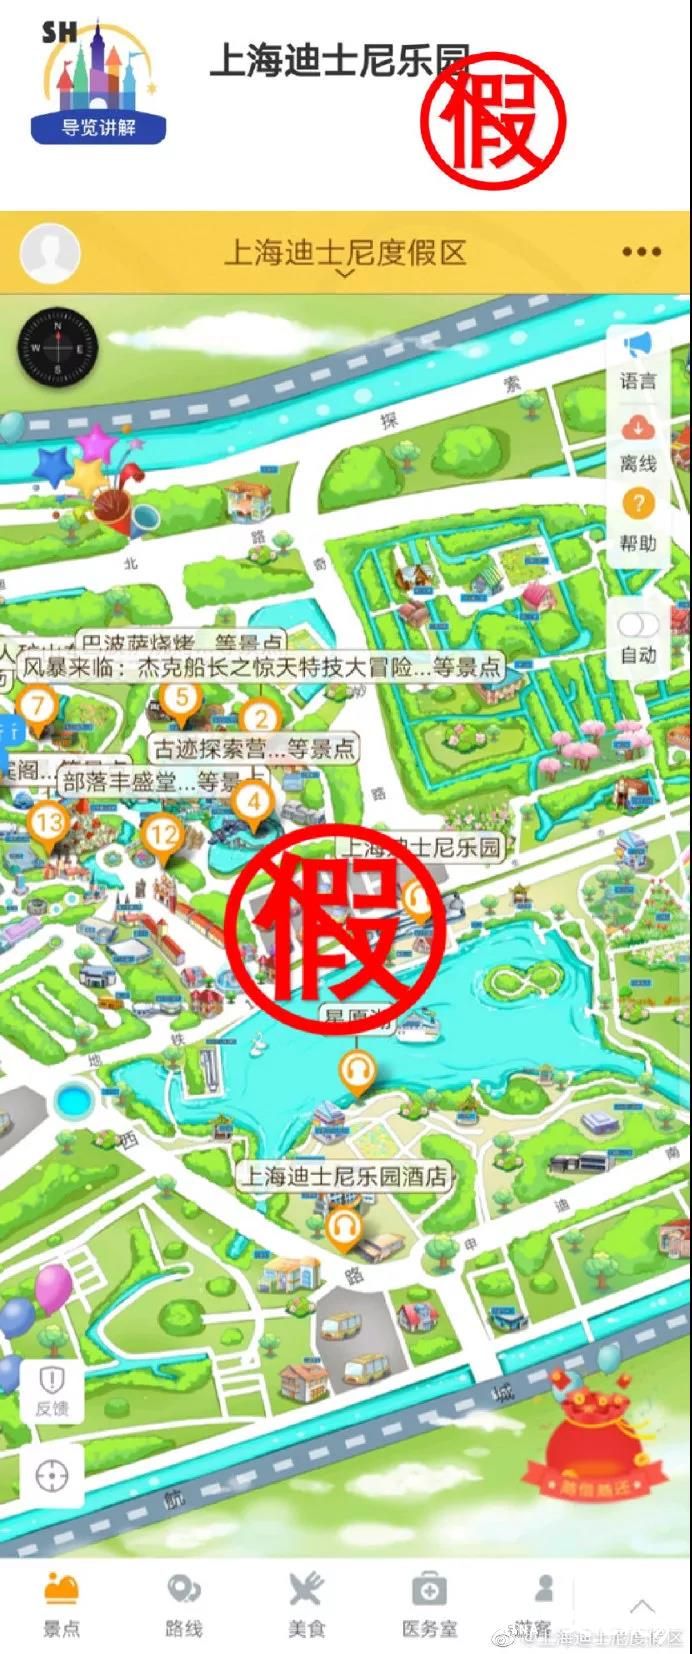 上海迪士尼乐园App违规收集个人信息？是霍尔果斯驴迹软件科技假冒的！